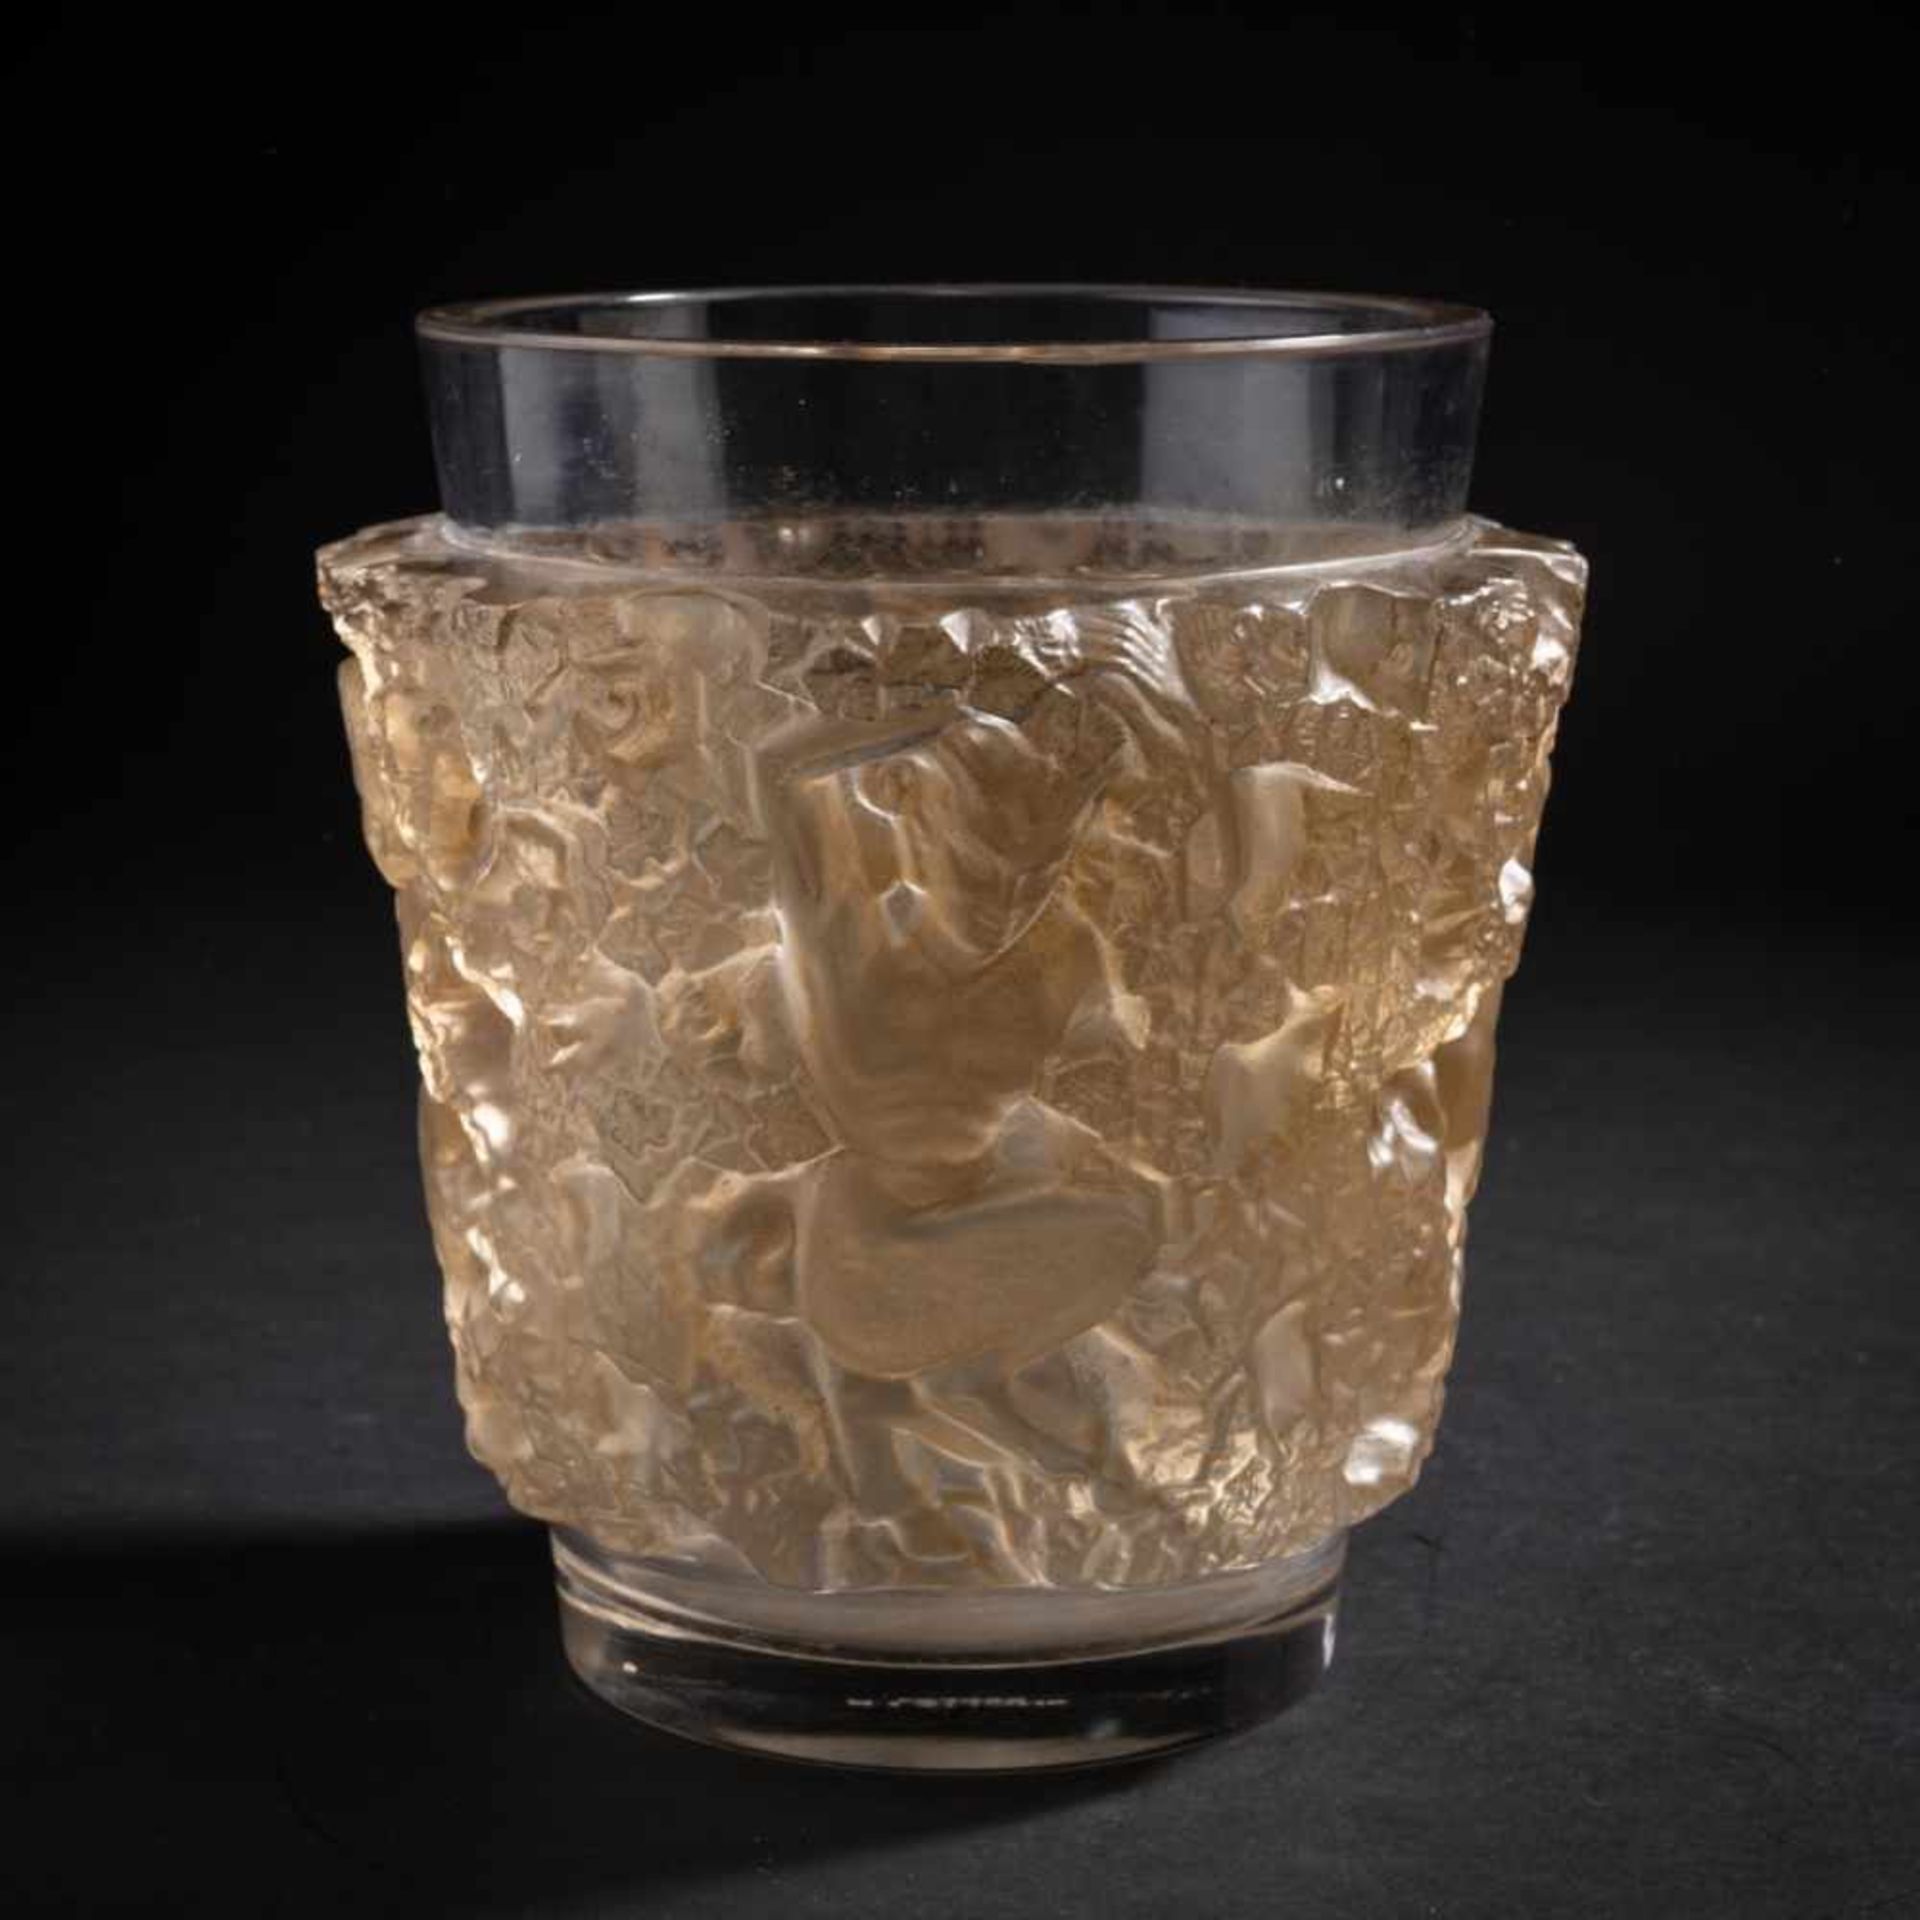 René Lalique, 'Bacchus' vase, 1938'Bacchus' vase, 1938H. 18 cm. Clear, moulded glass, partially